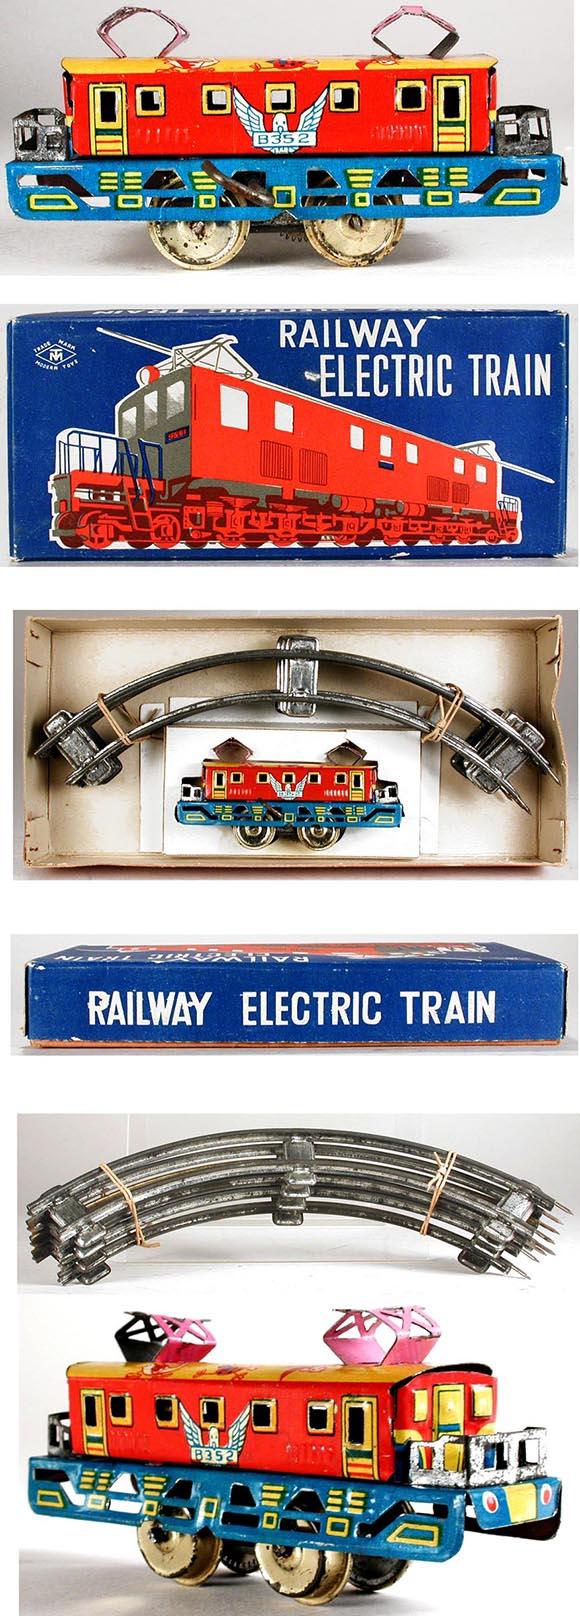 c.1950 Masudaya, Clockwork Railway Electric Train in Original Box